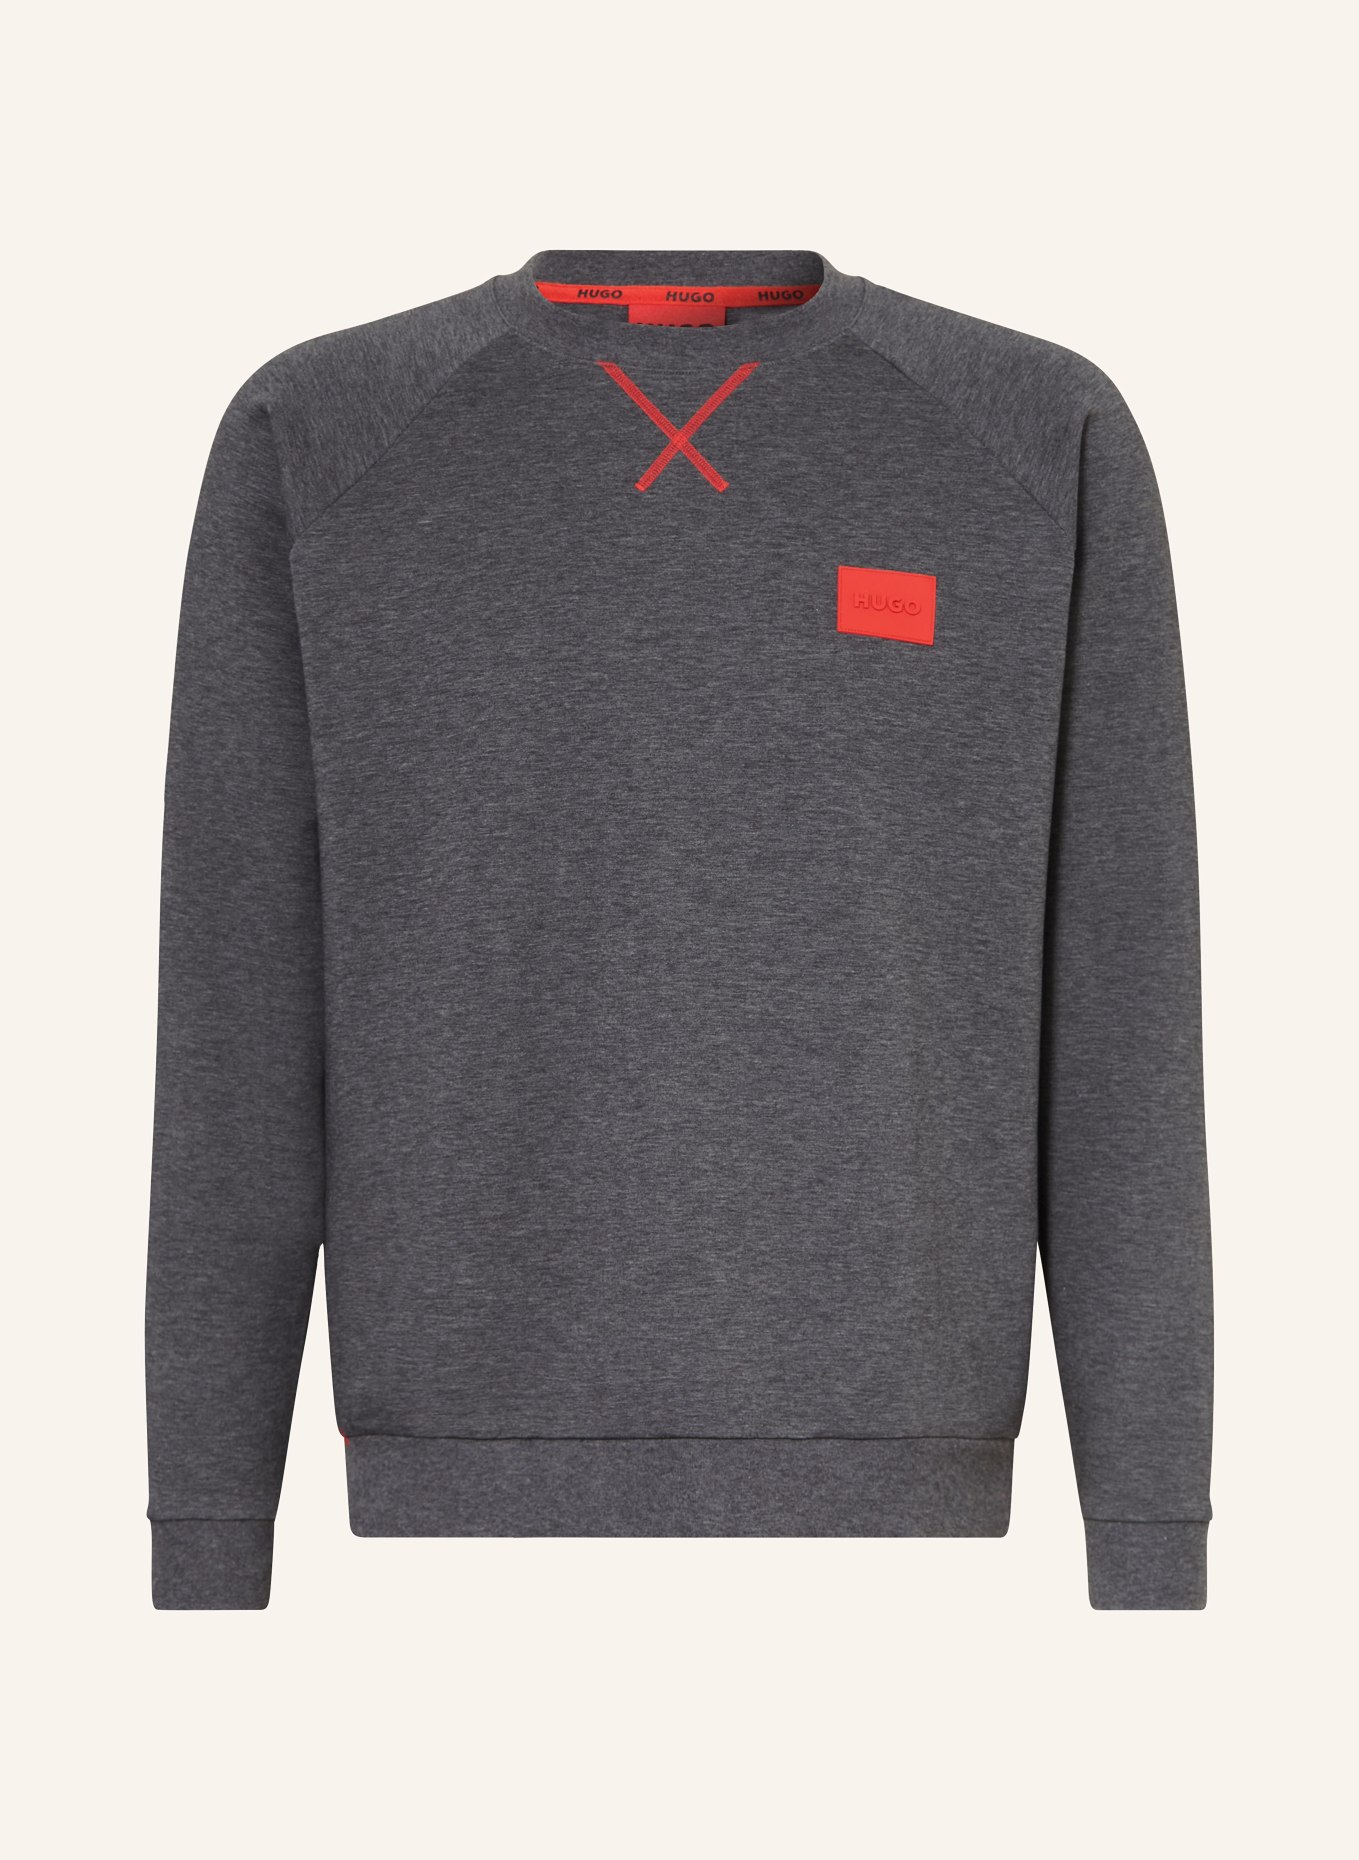 HUGO Lounge sweatshirt, Color: GRAY (Image 1)